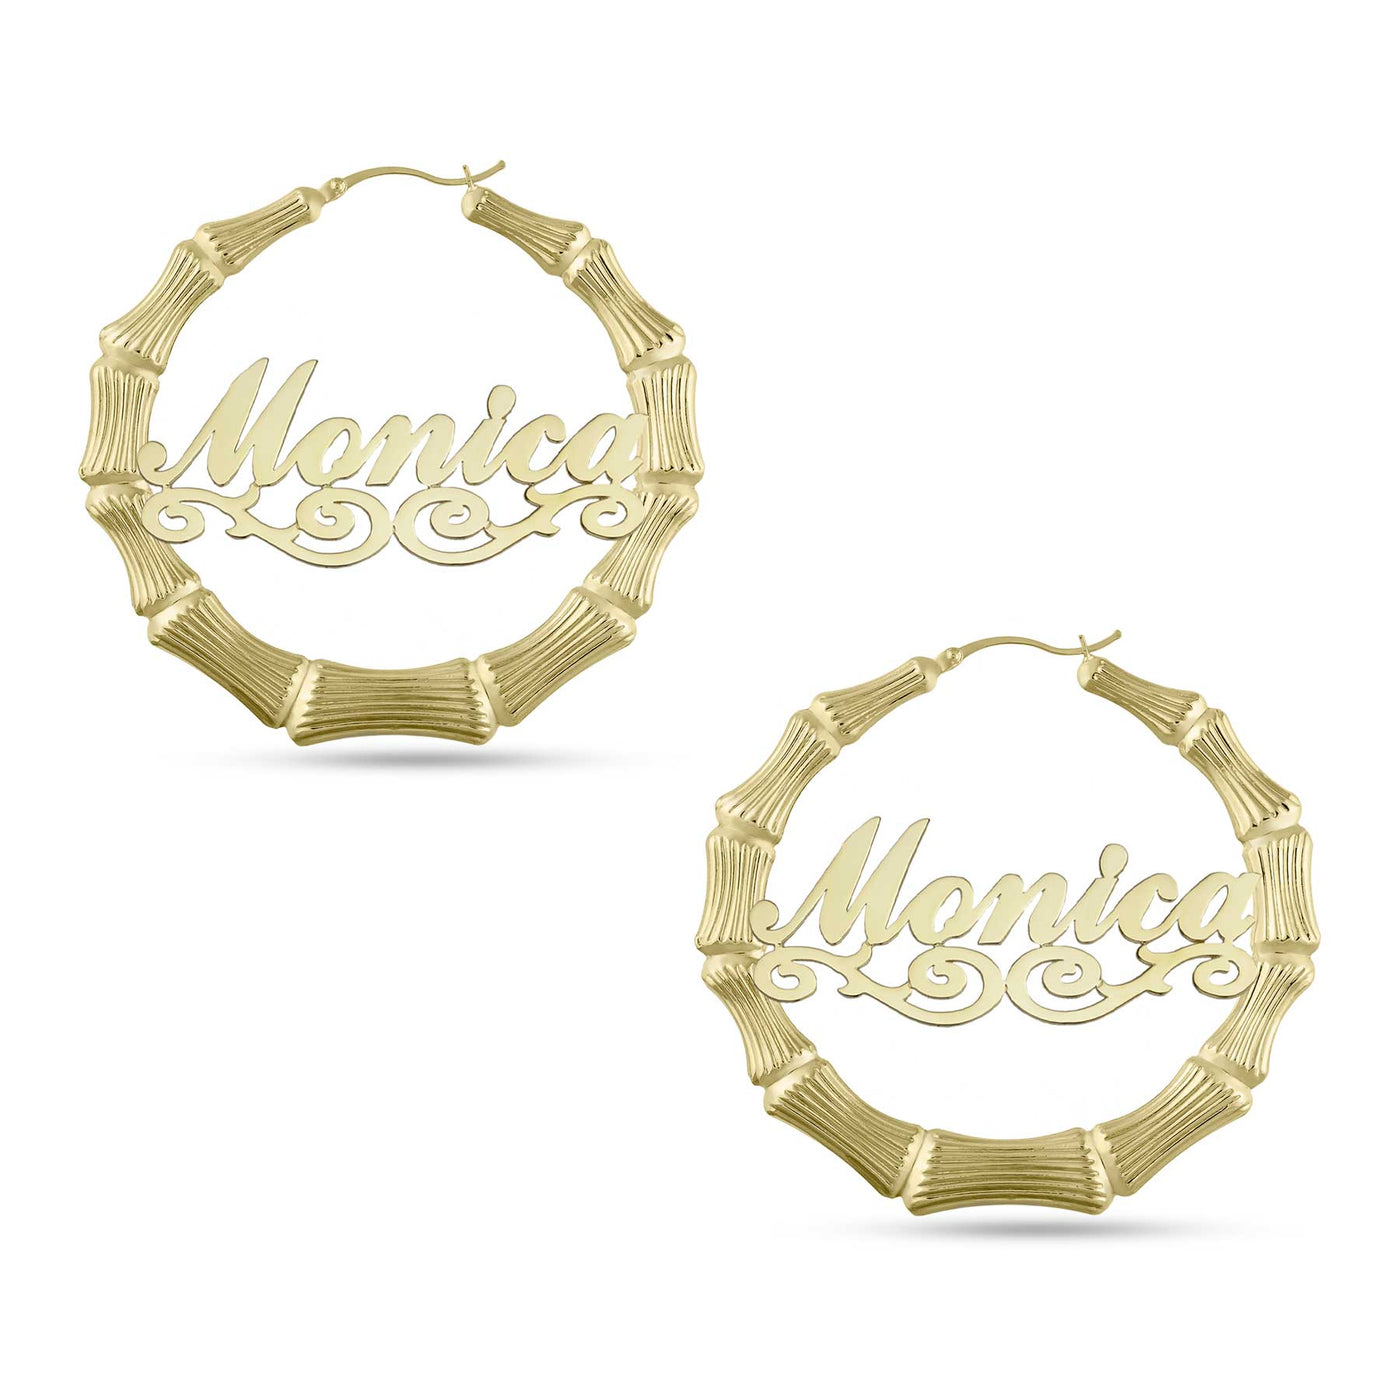 Ladies Script Name Plate Bamboo Hoop Earrings 14K Gold - Style 16